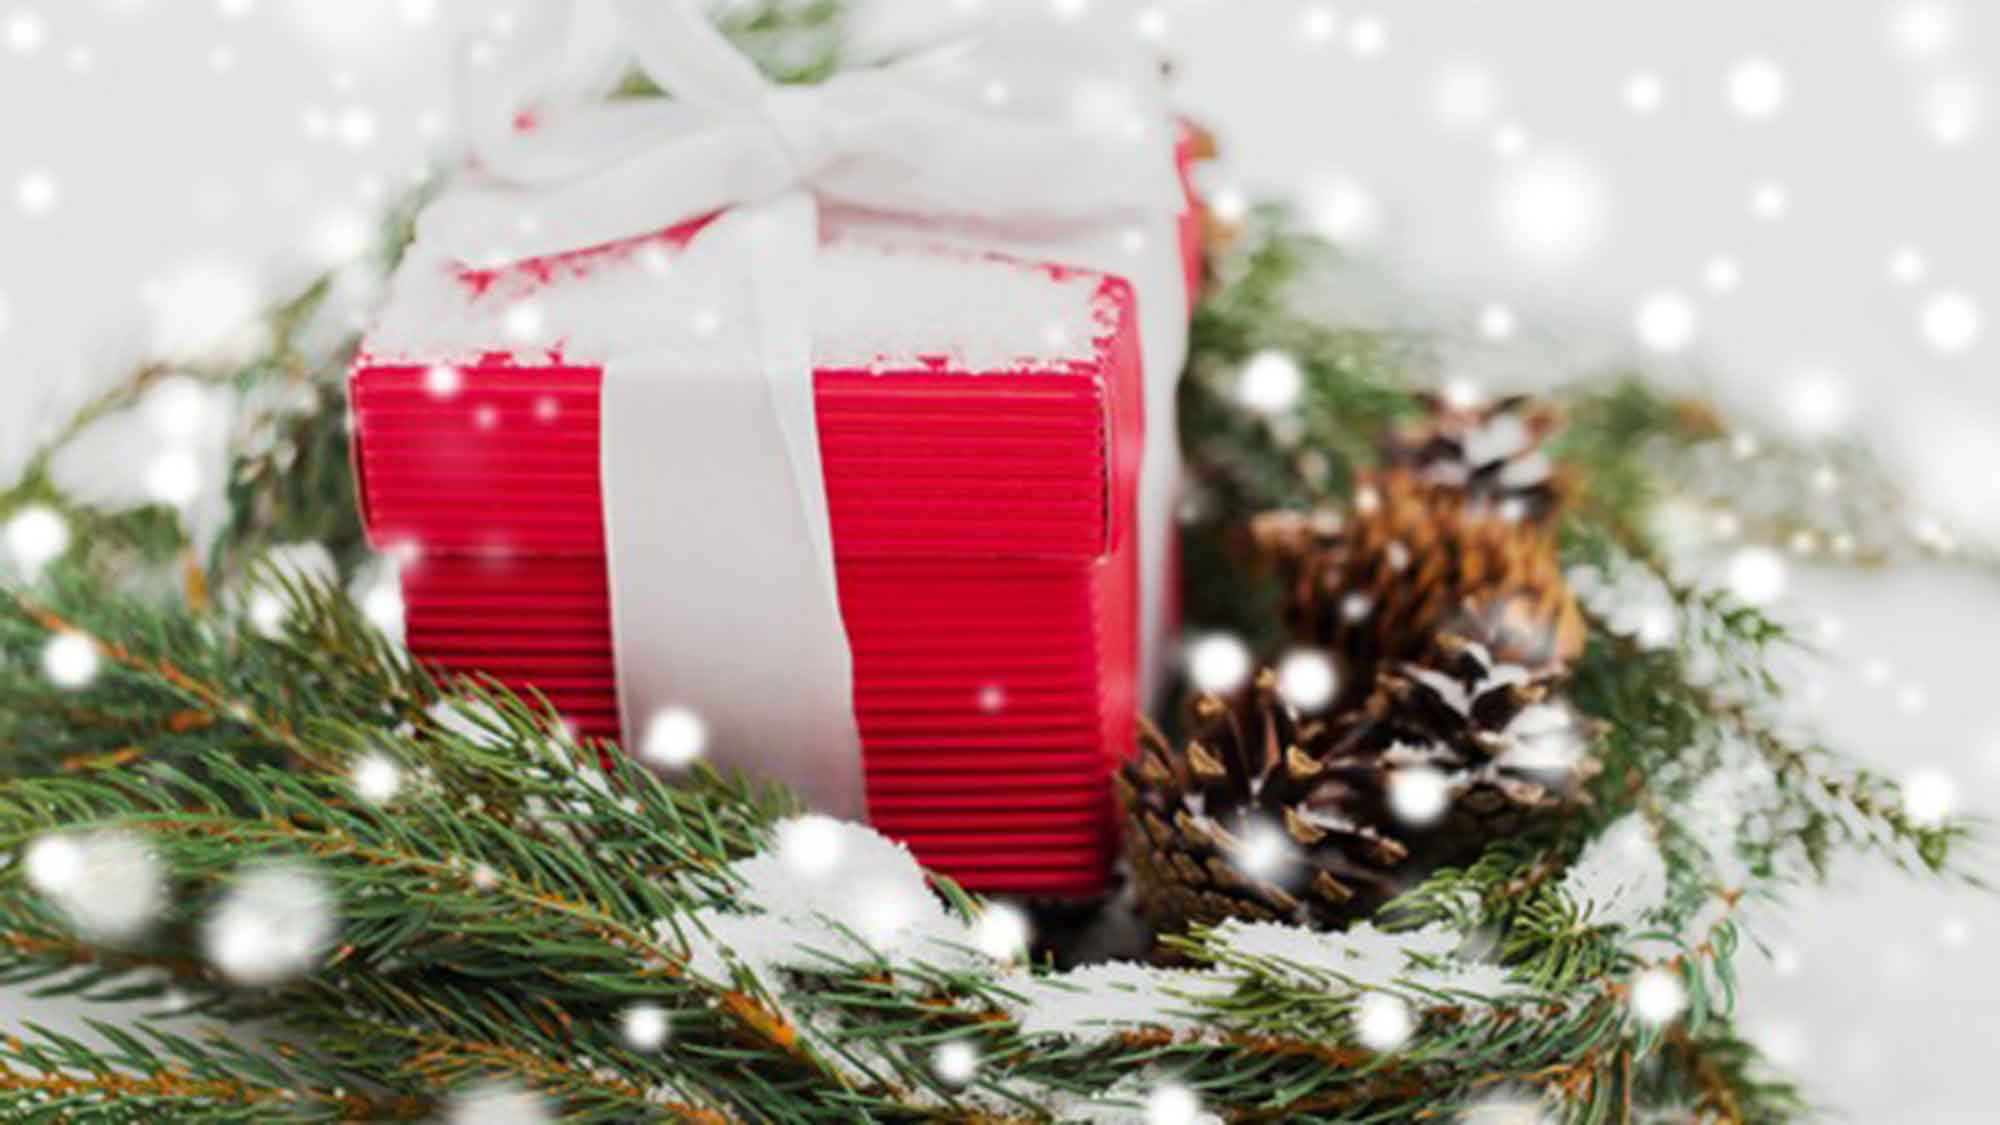 Verbraucherzentrale NRW: energiesparende Geschenke unter dem Weihnachtsbaum